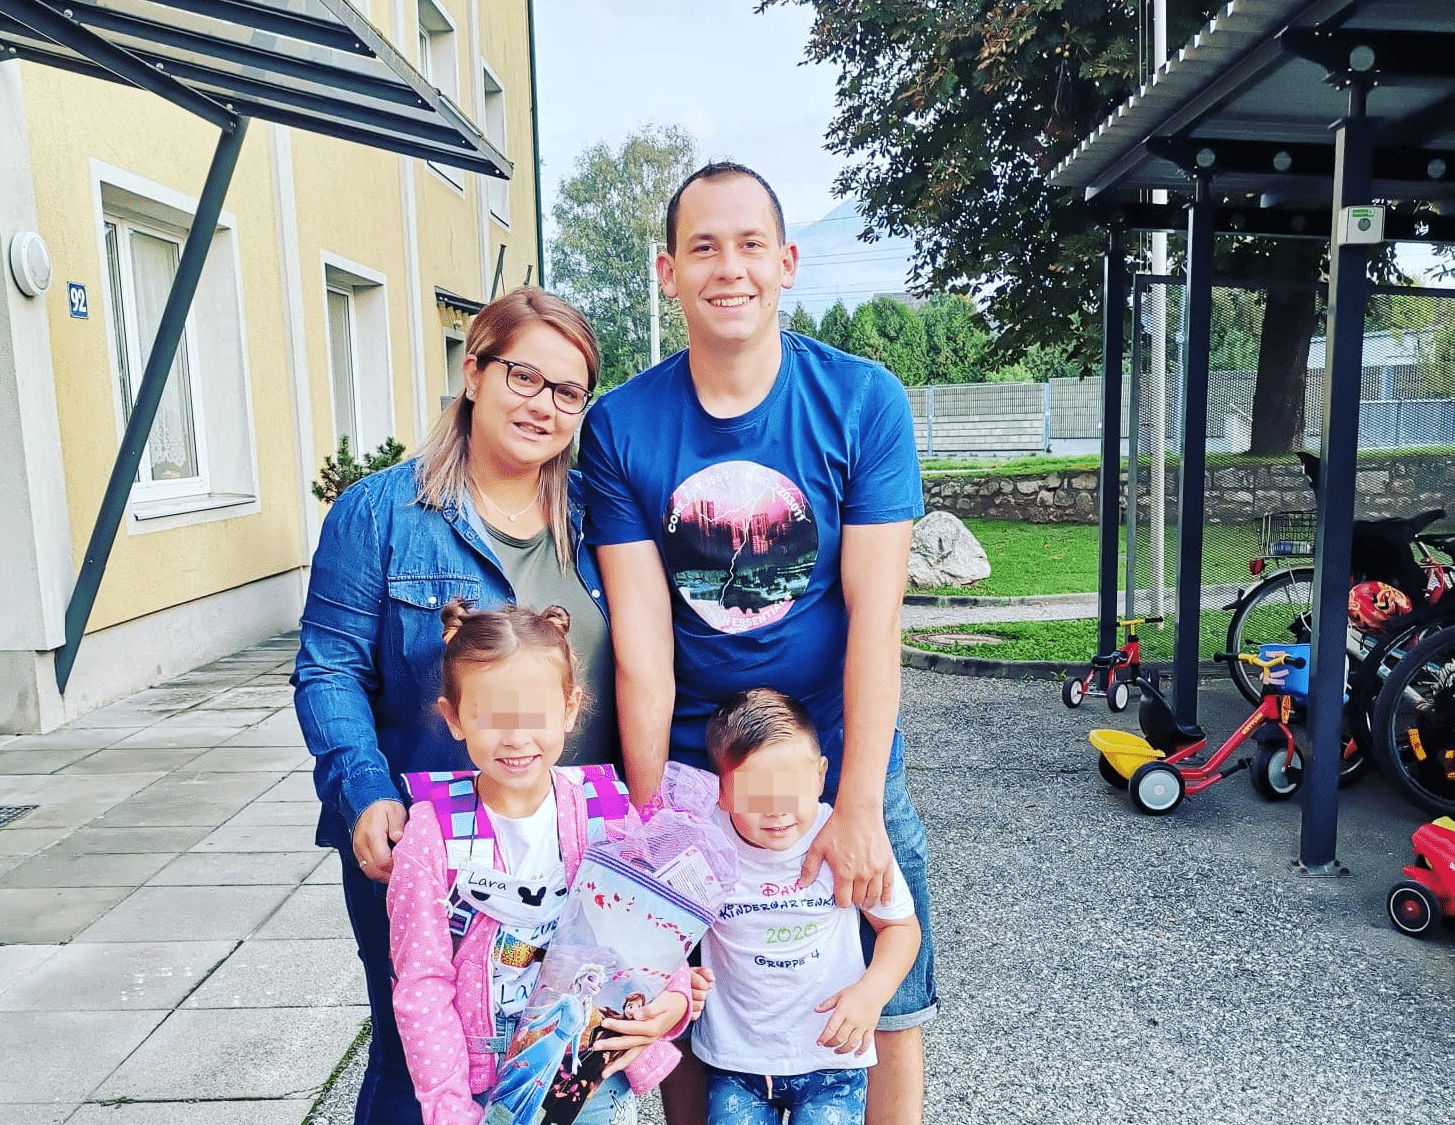 Jovanka und Alexander Palle mit ihren beiden Kindern Lara und David. Derzeit steht die Villacher Familie vor großen Problemen.